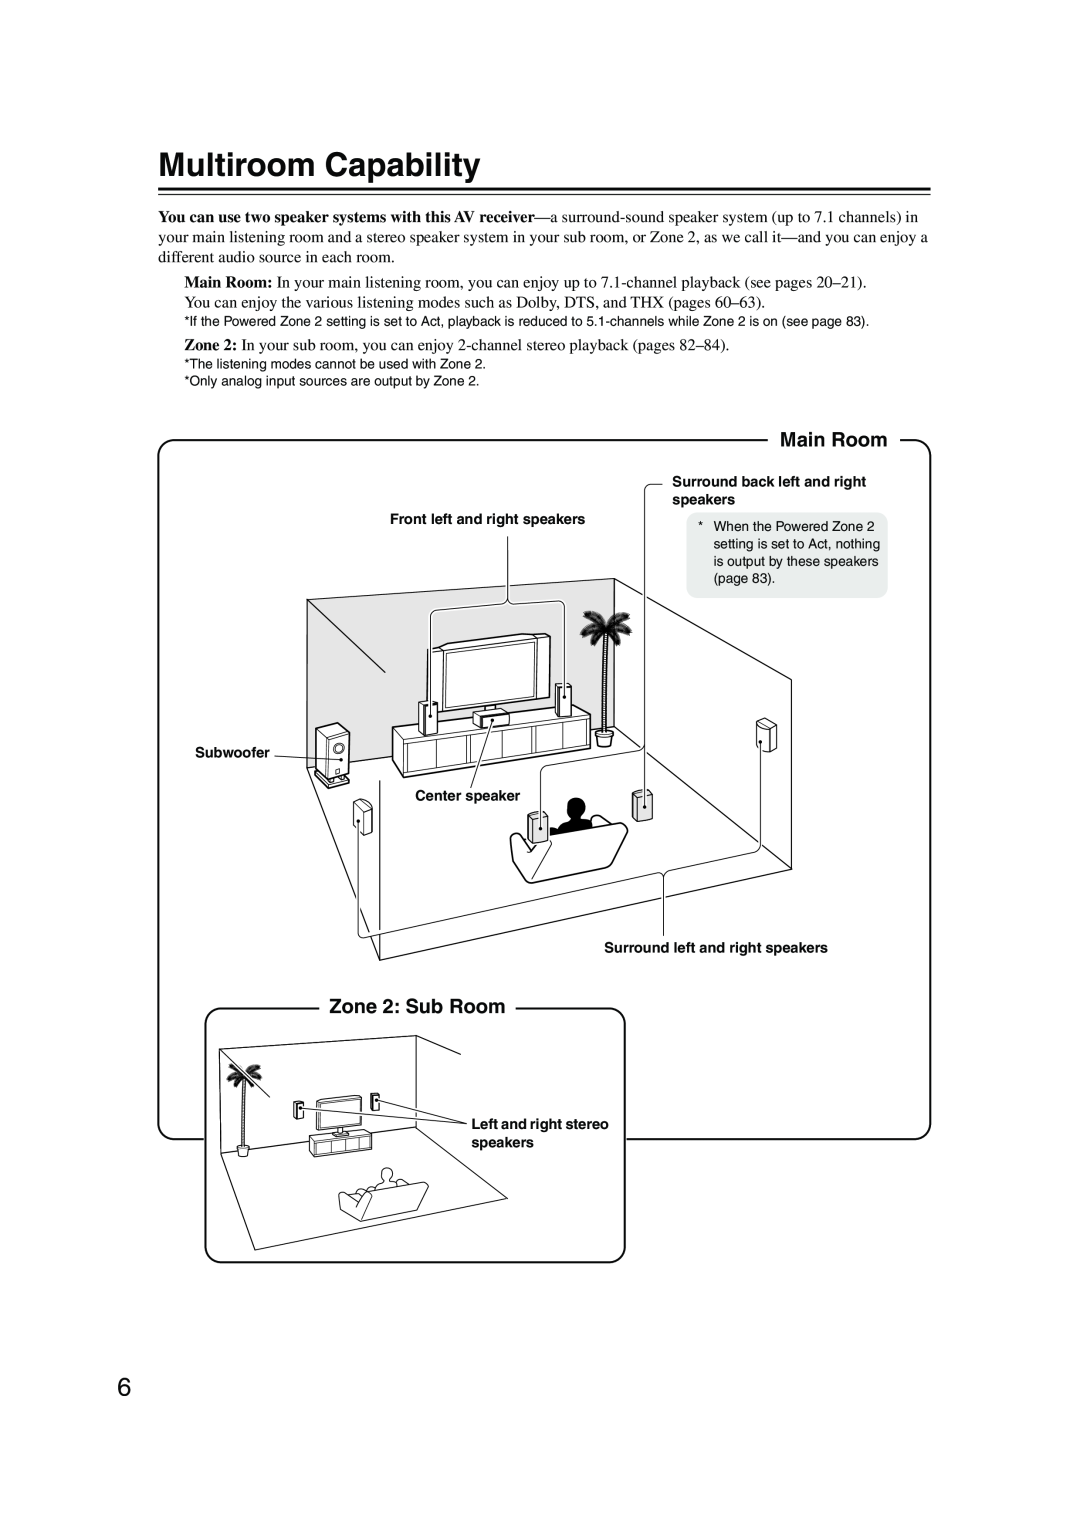 Onkyo SR804 instruction manual Multiroom Capability, Main Room, Zone 2: Sub Room 